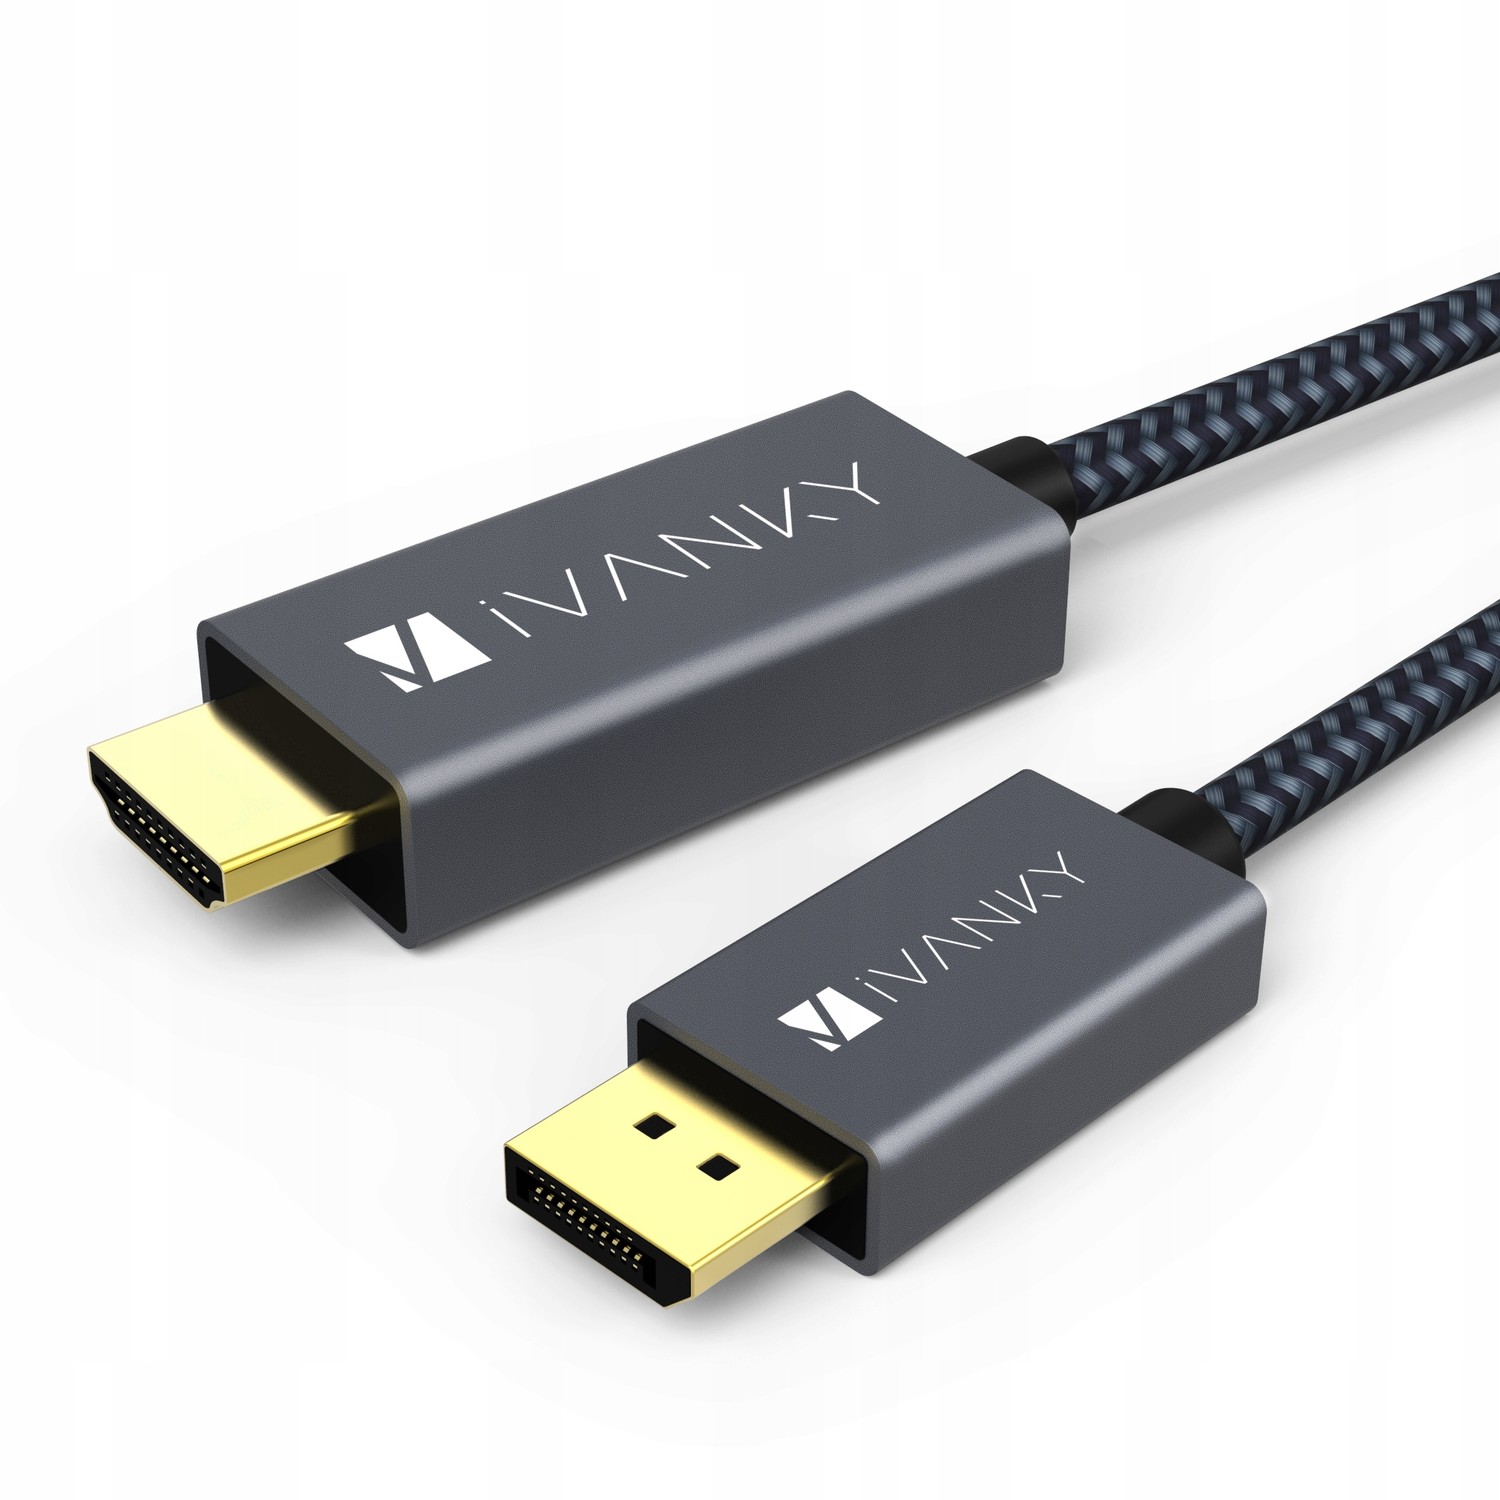 Ivanky kabel DisplayPort to Hdmi kabel 2 m